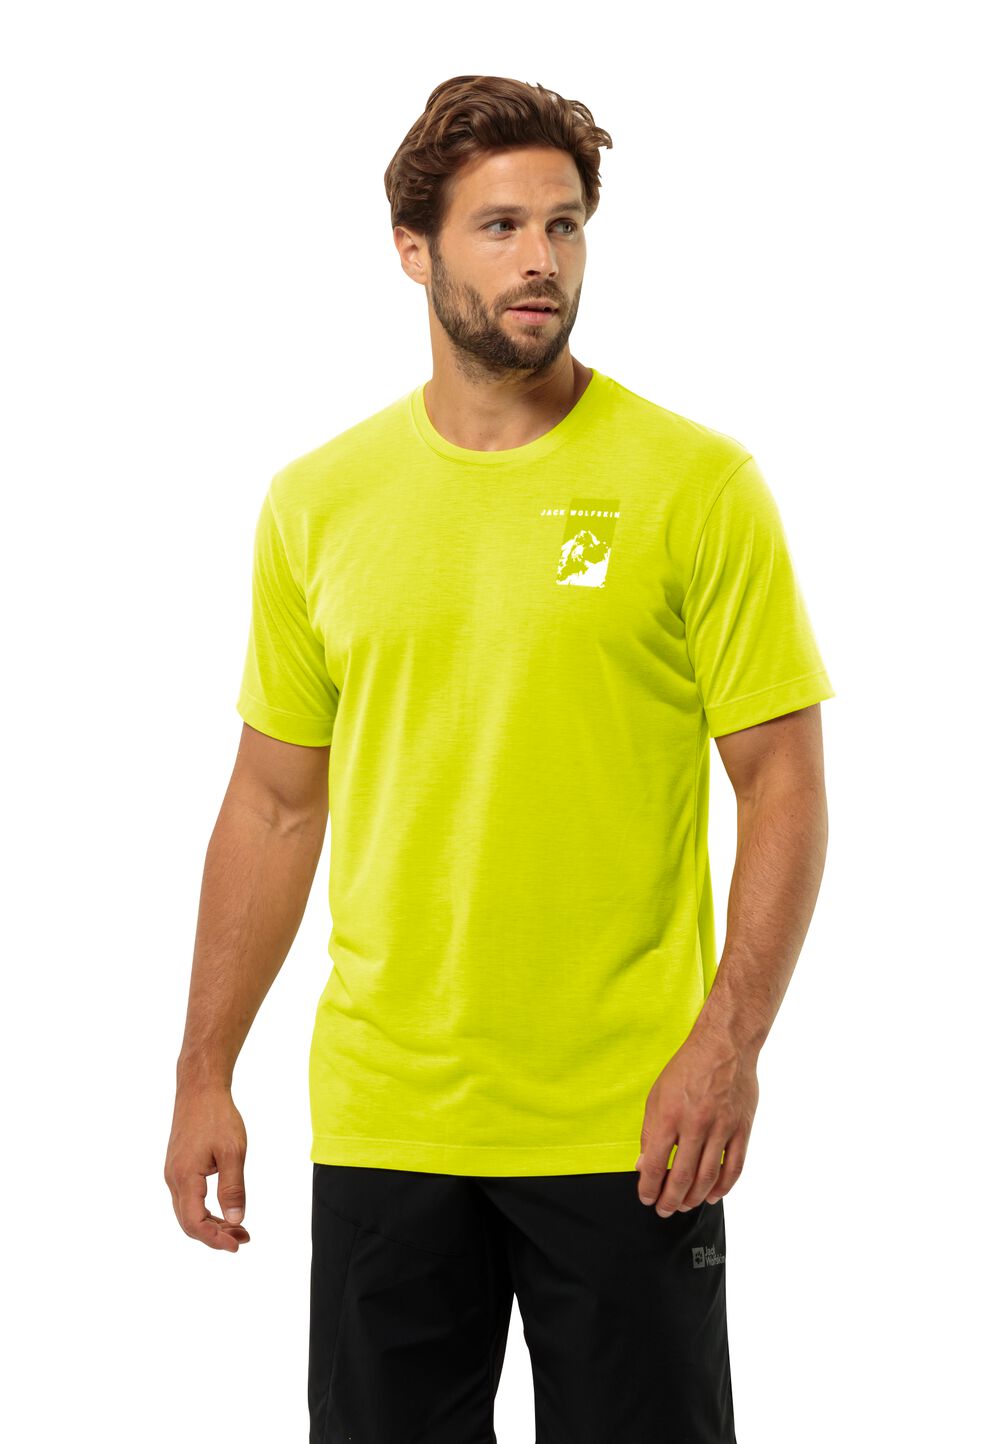 Jack Wolfskin Vonnan S S Graphic T-Shirt Men Functioneel shirt Heren S oranje firefly